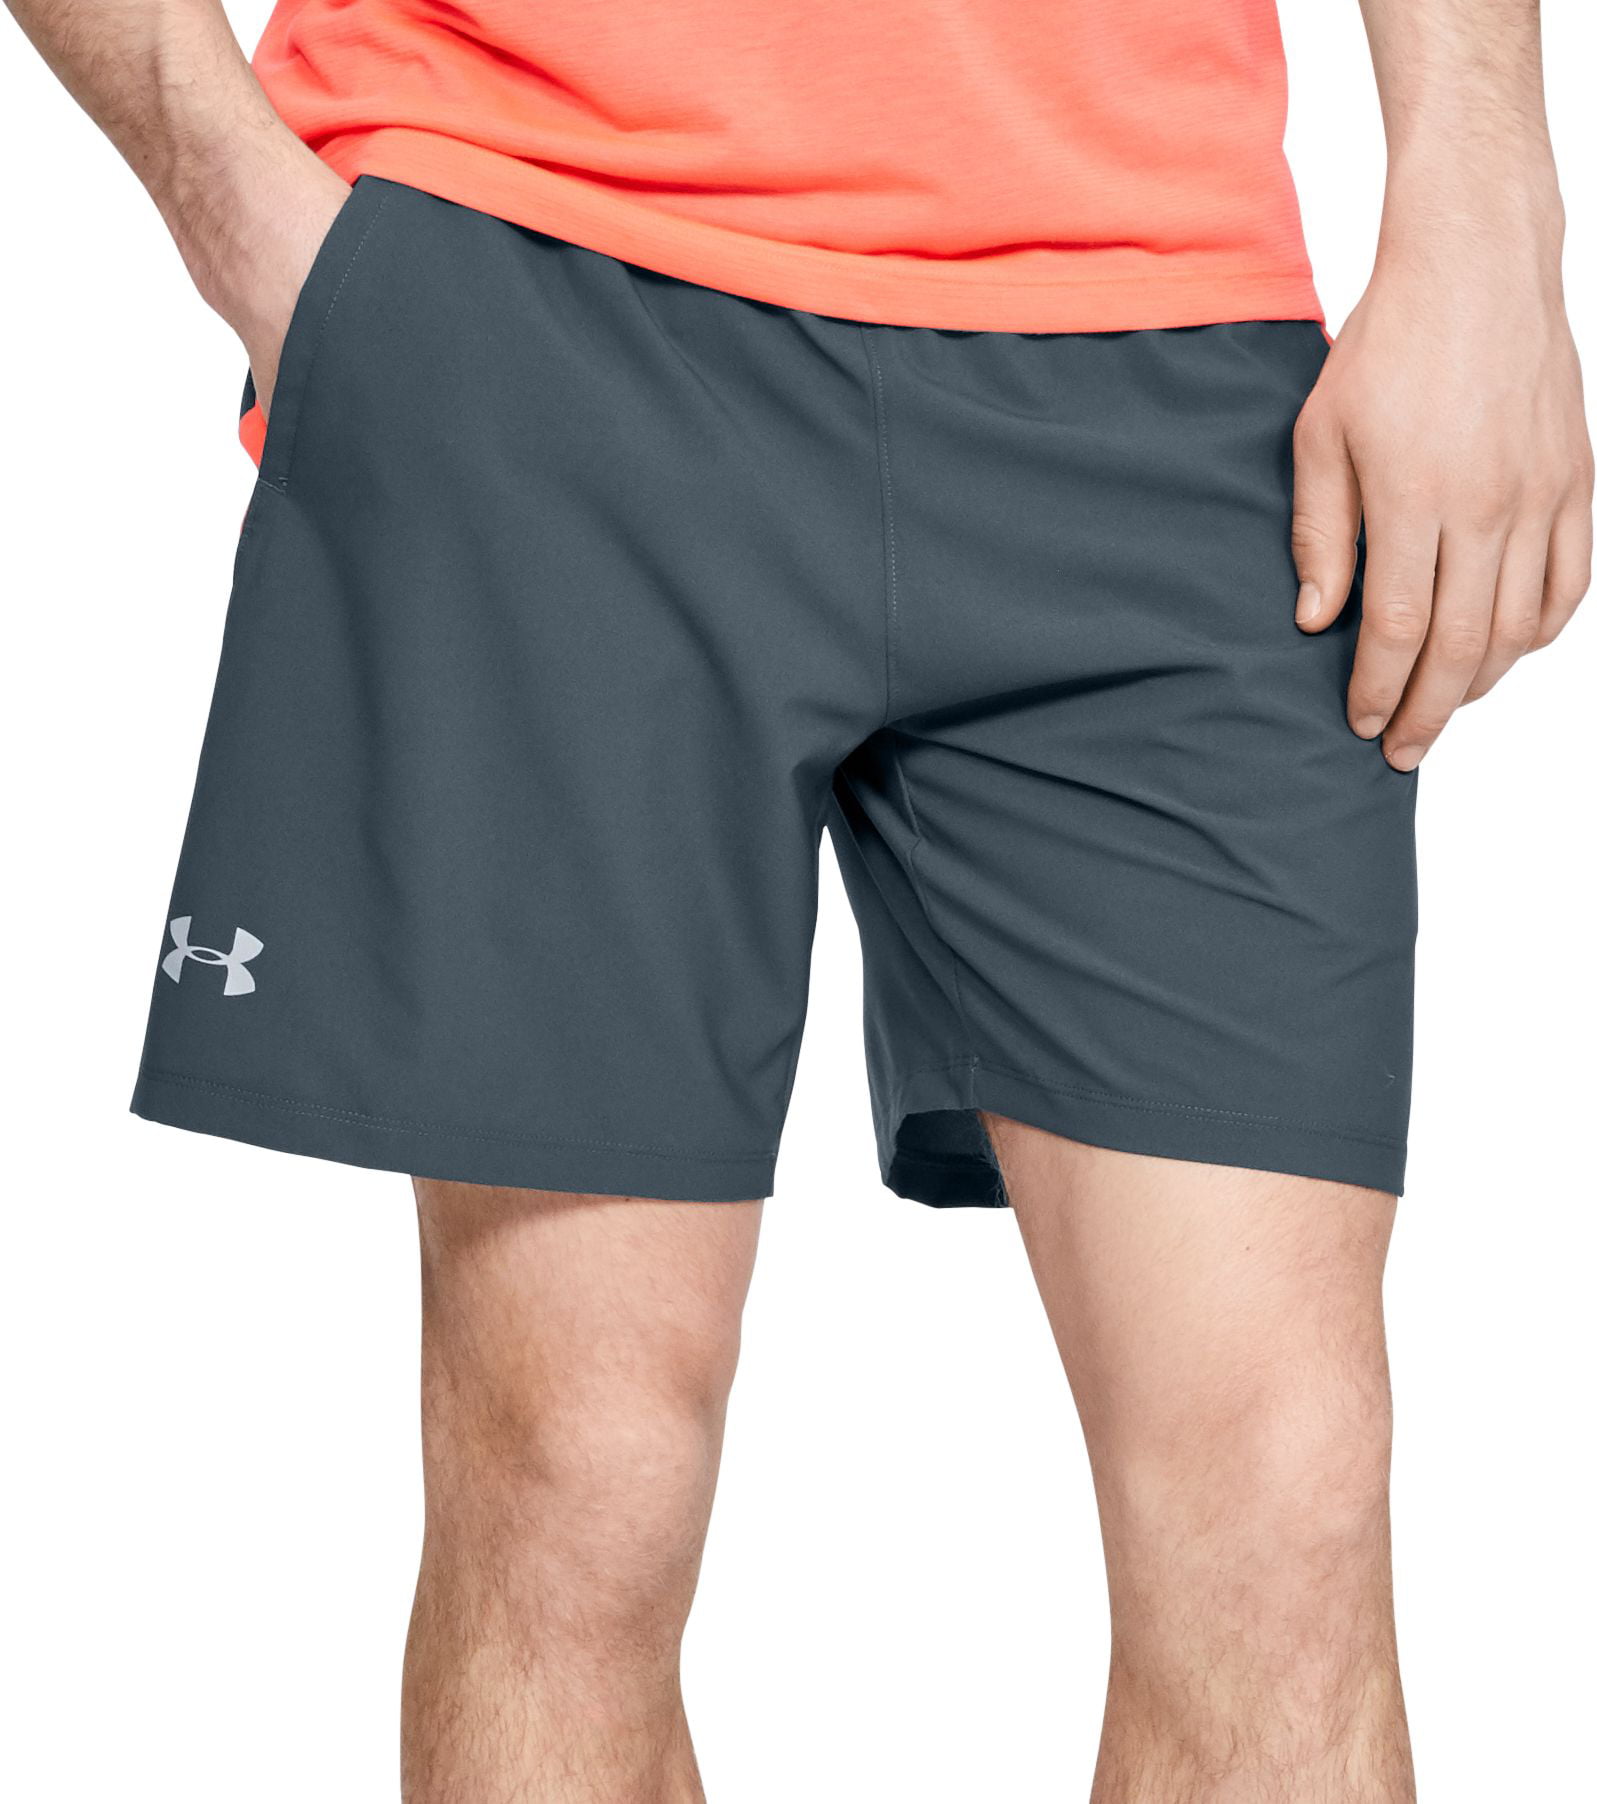 Men's Under Shorts Sports Direct Hot GET OFF, www.islandcrematorium.ie